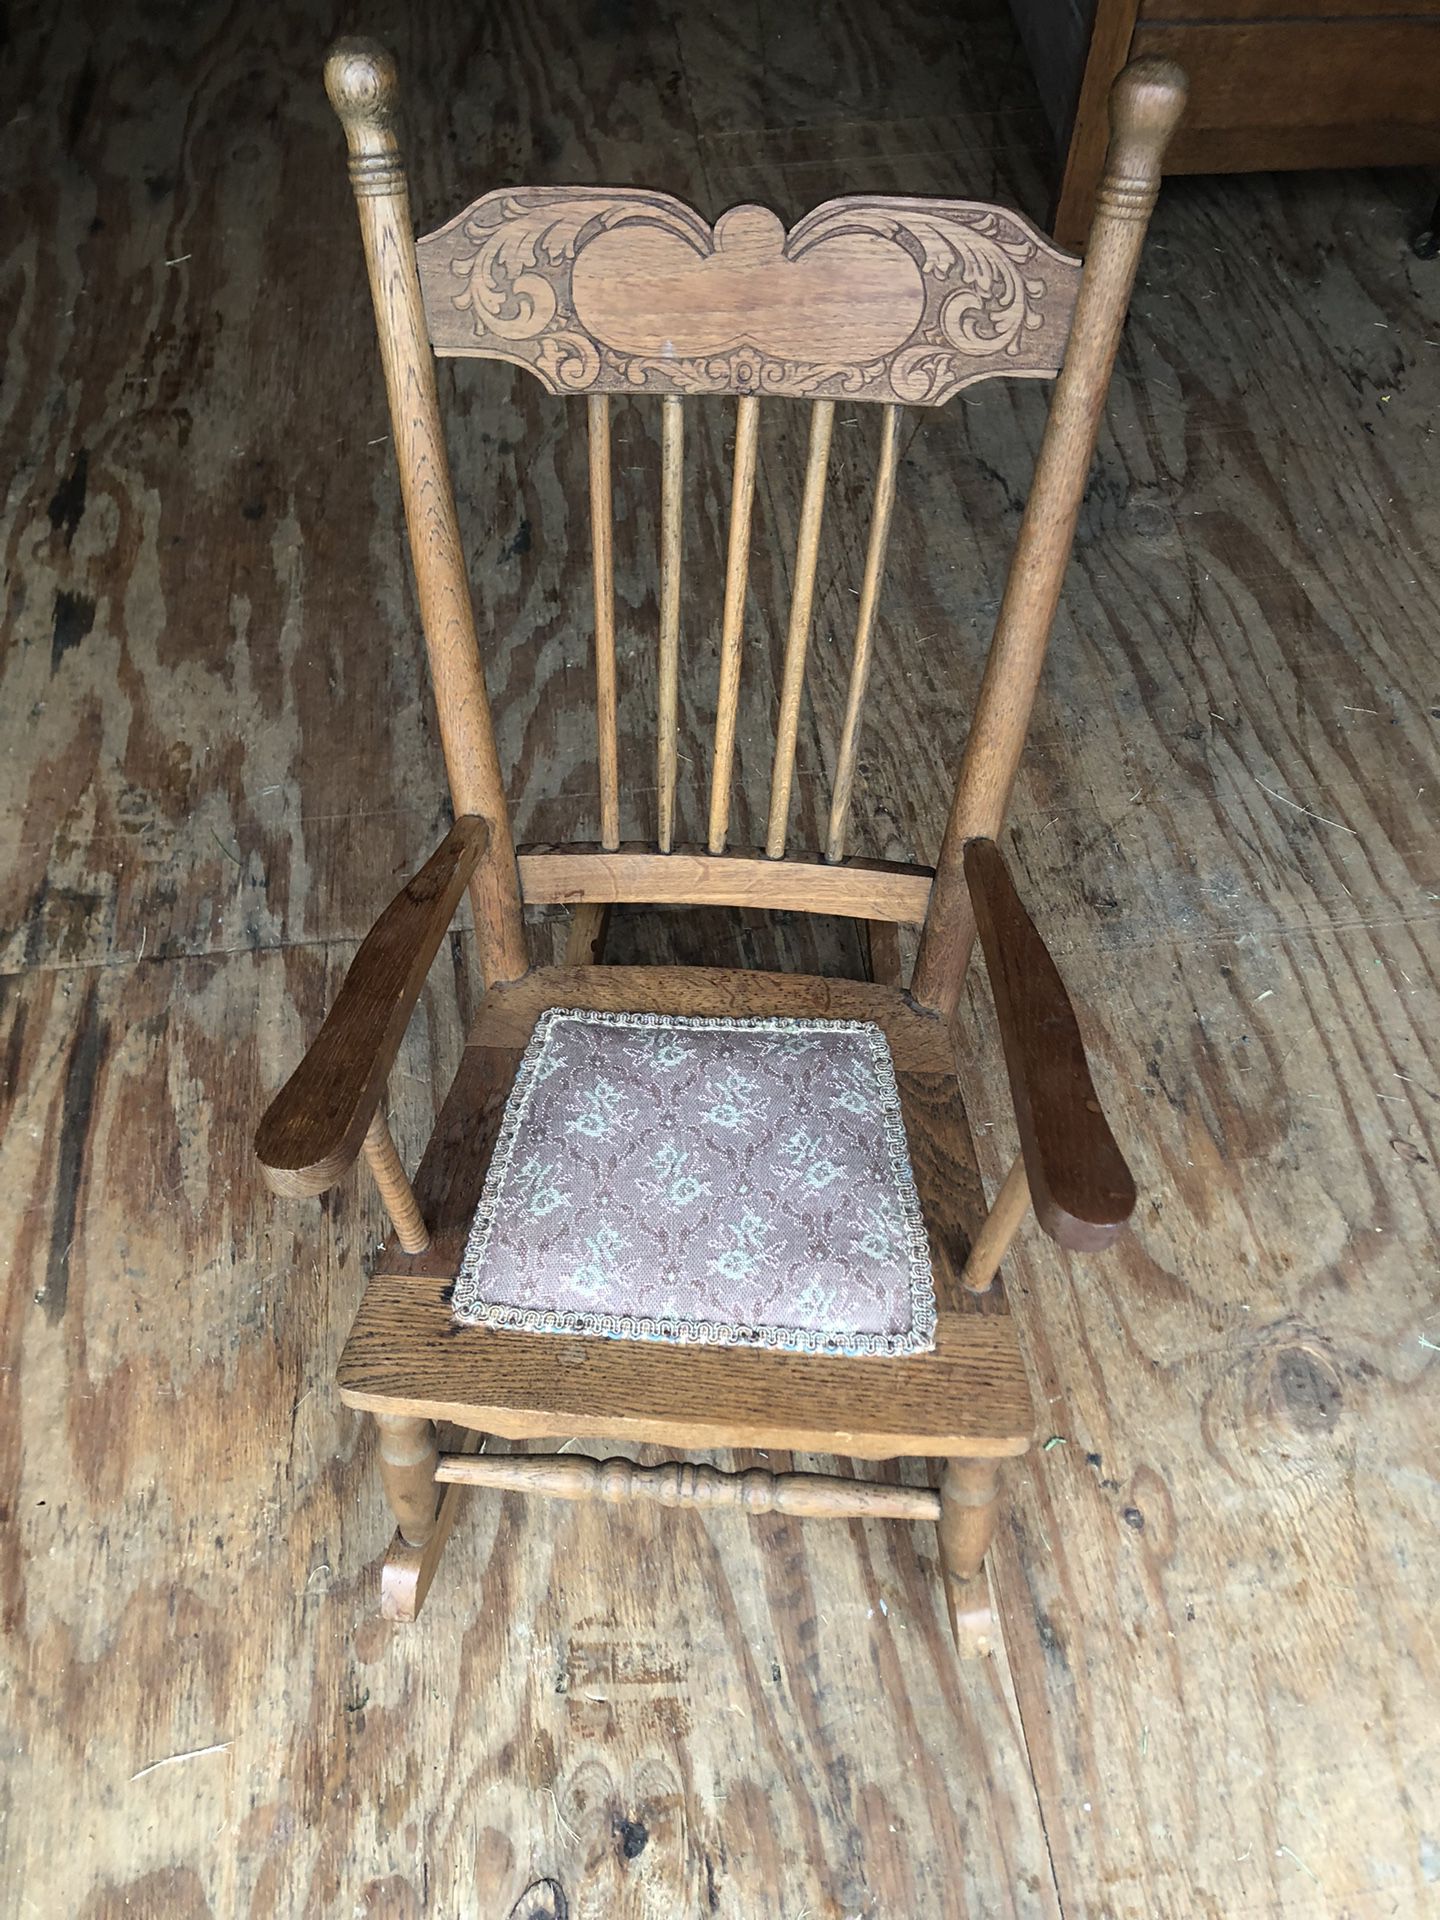 Vintage Child’s Rocking Chair